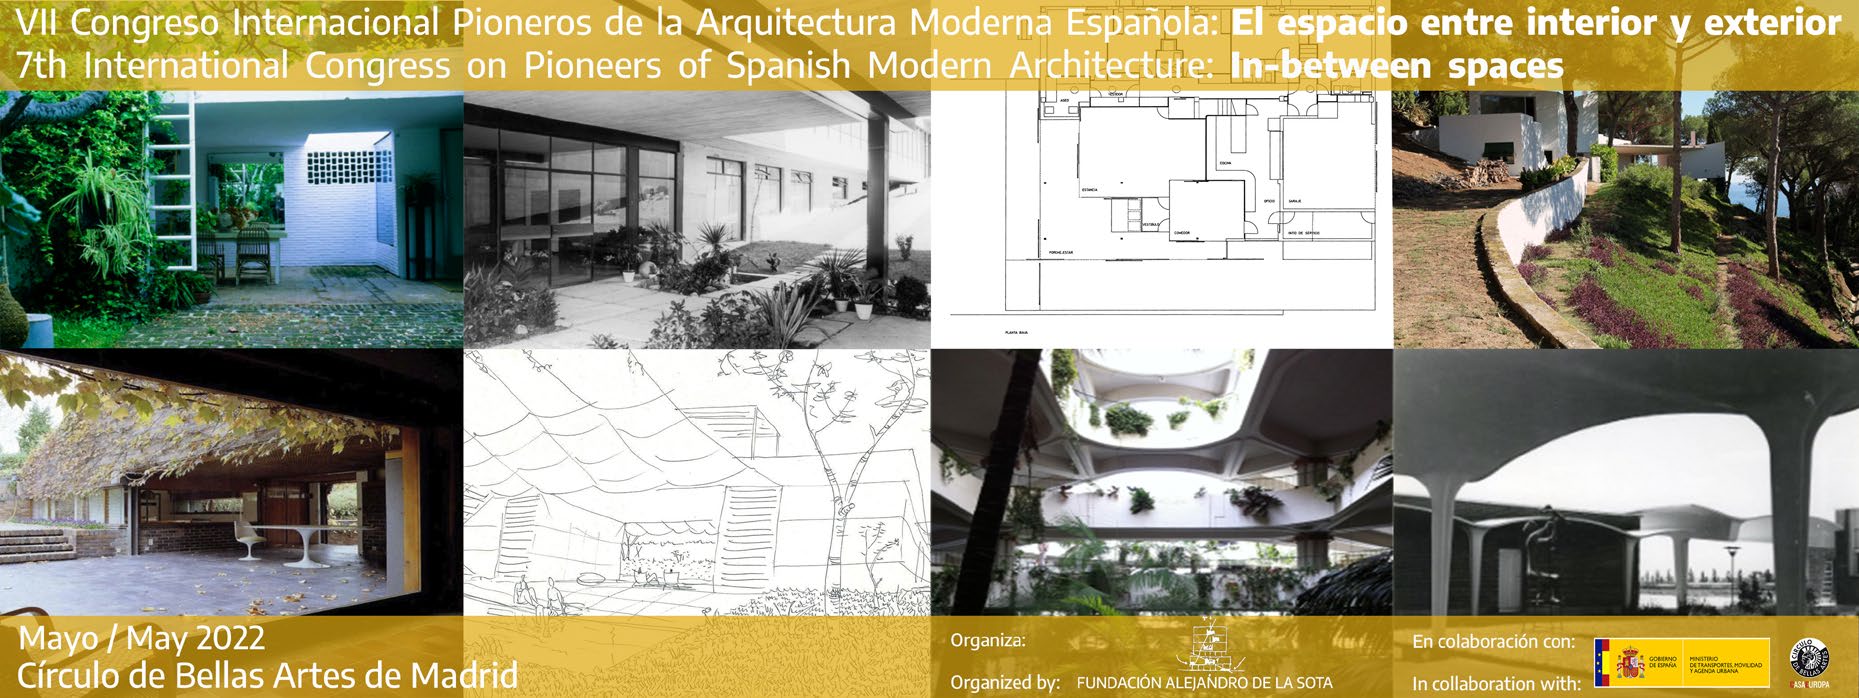 VII Congreso Internacional Pioneros de la Arquitectura Moderna Española. El espacio entre interior y exterior